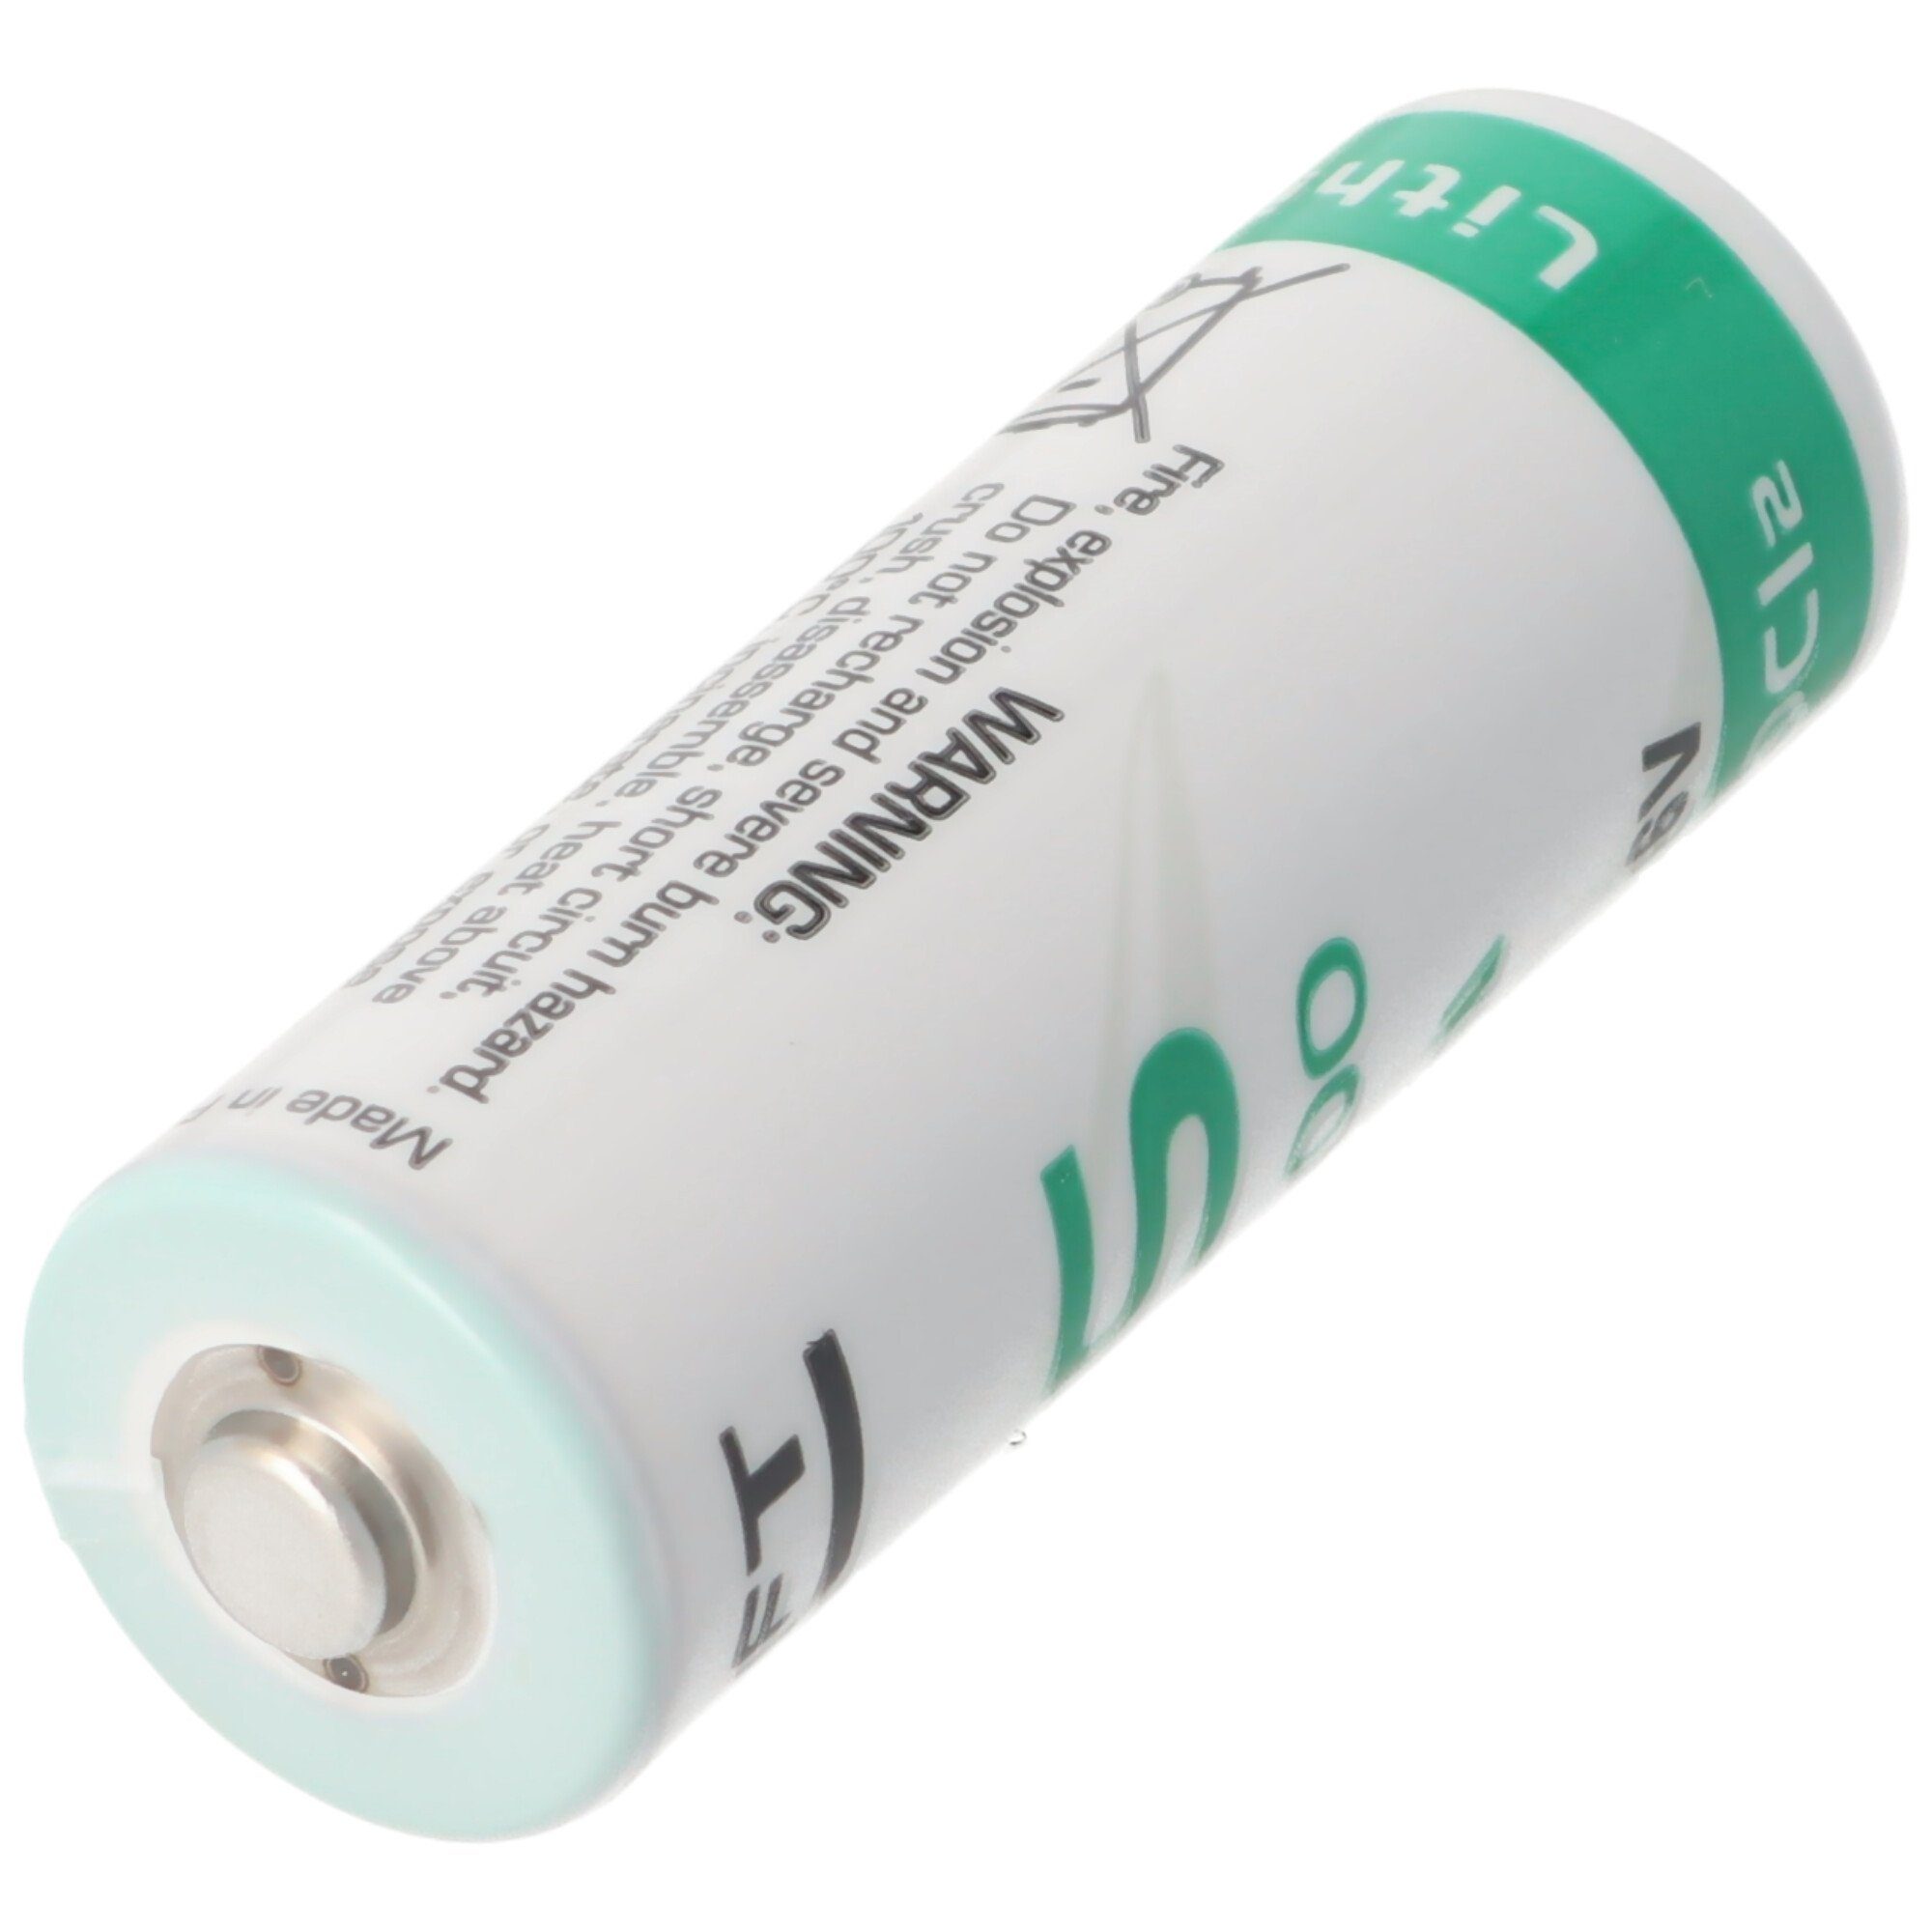 Saft SAFT LS17500 Lithium Batterie, ohne Batterie, Lötfahne (3,6 V) A, Size